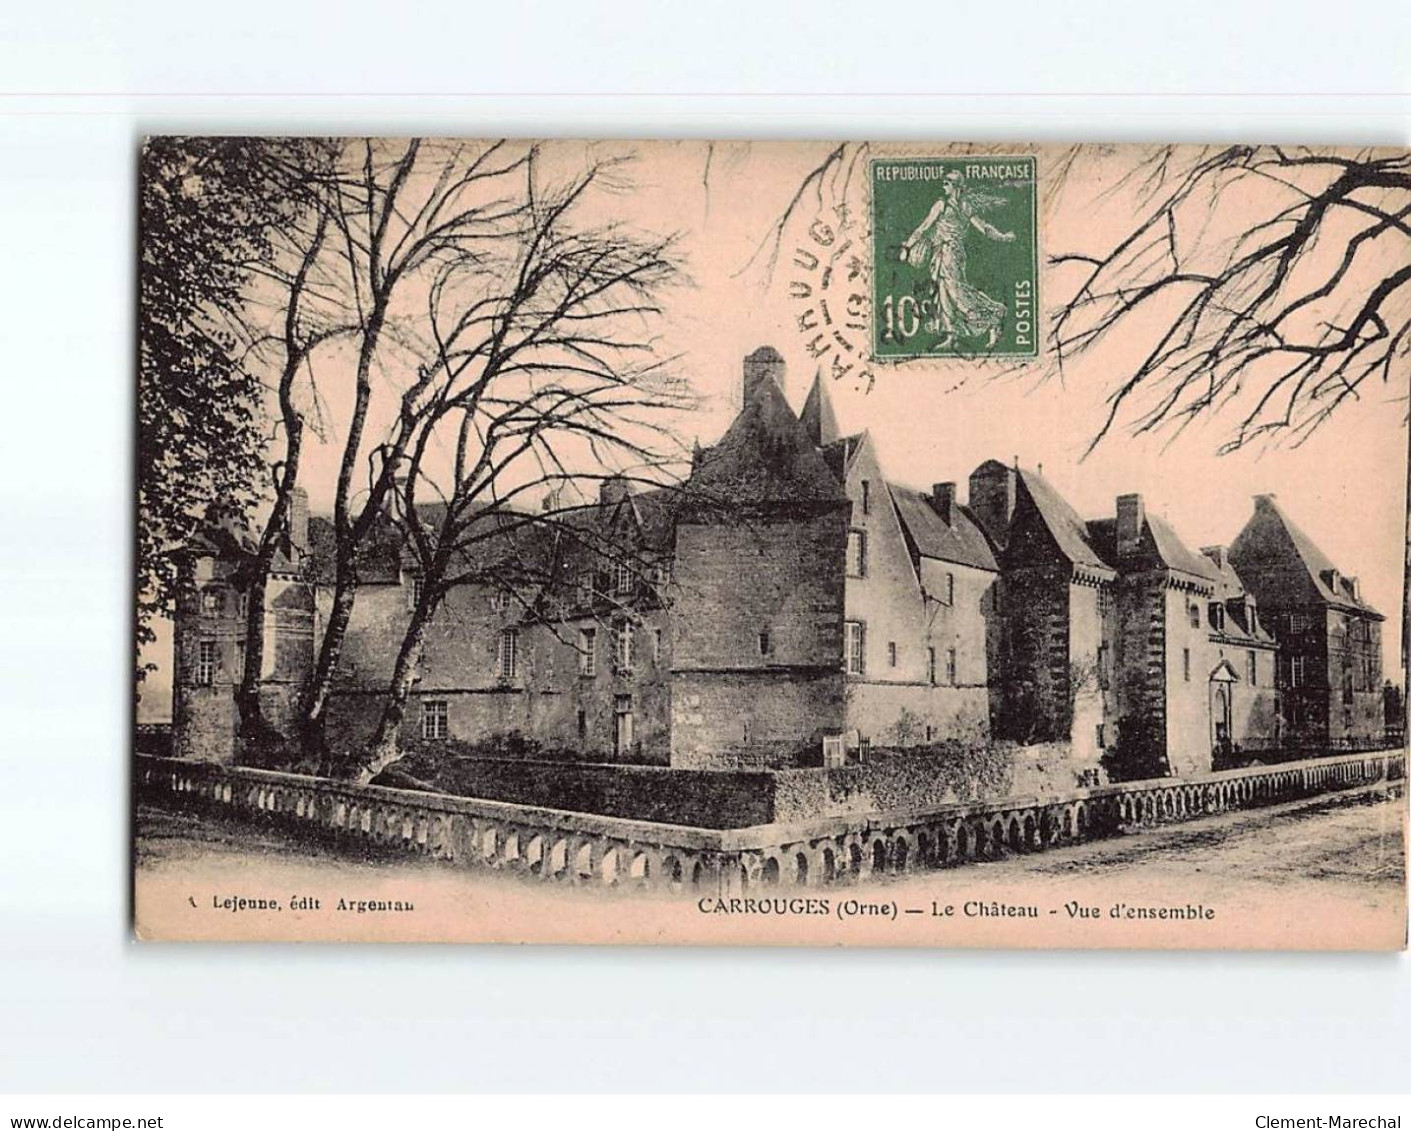 CARROUGES : Le Château, Vue D'ensemble - état - Carrouges